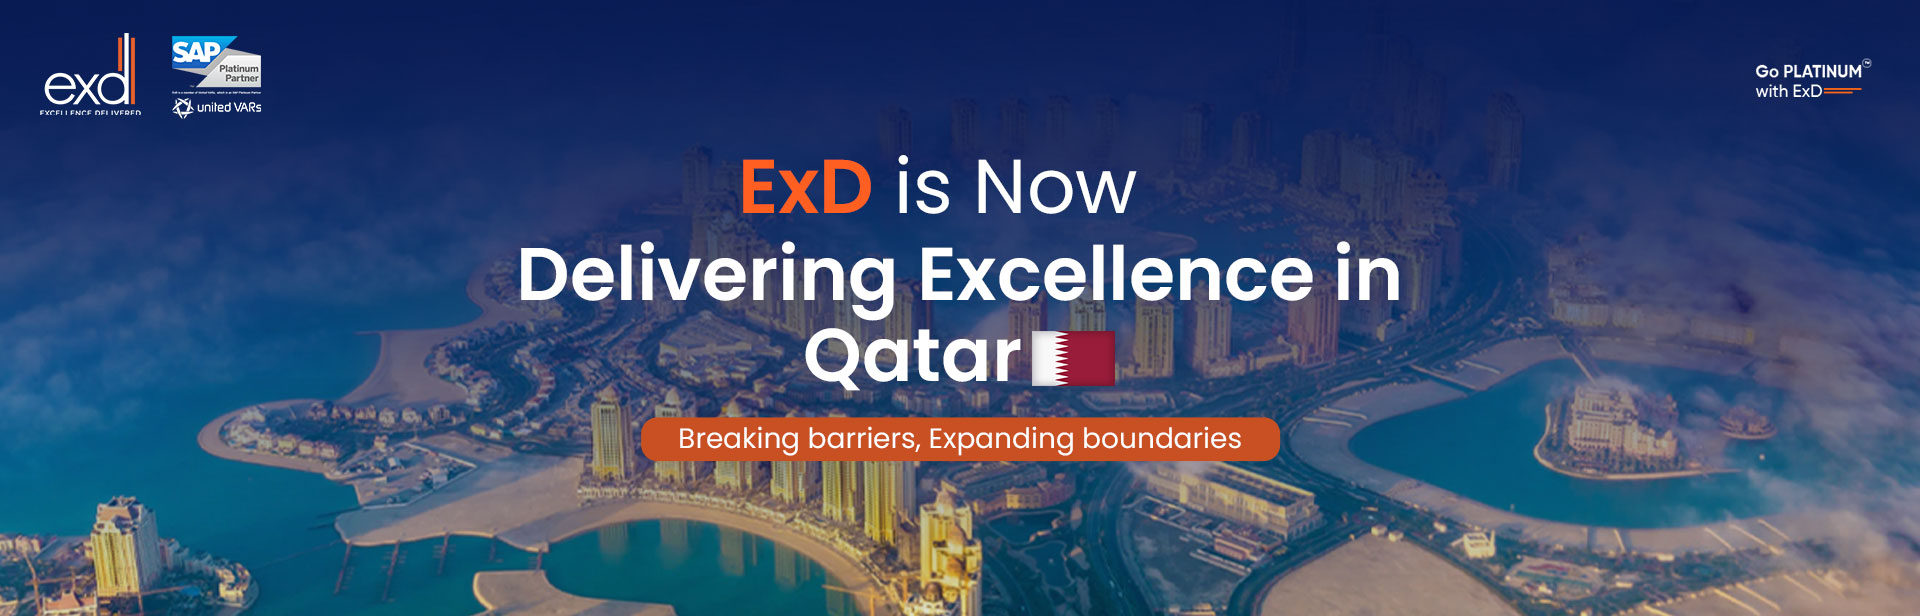 ExD in Qatar